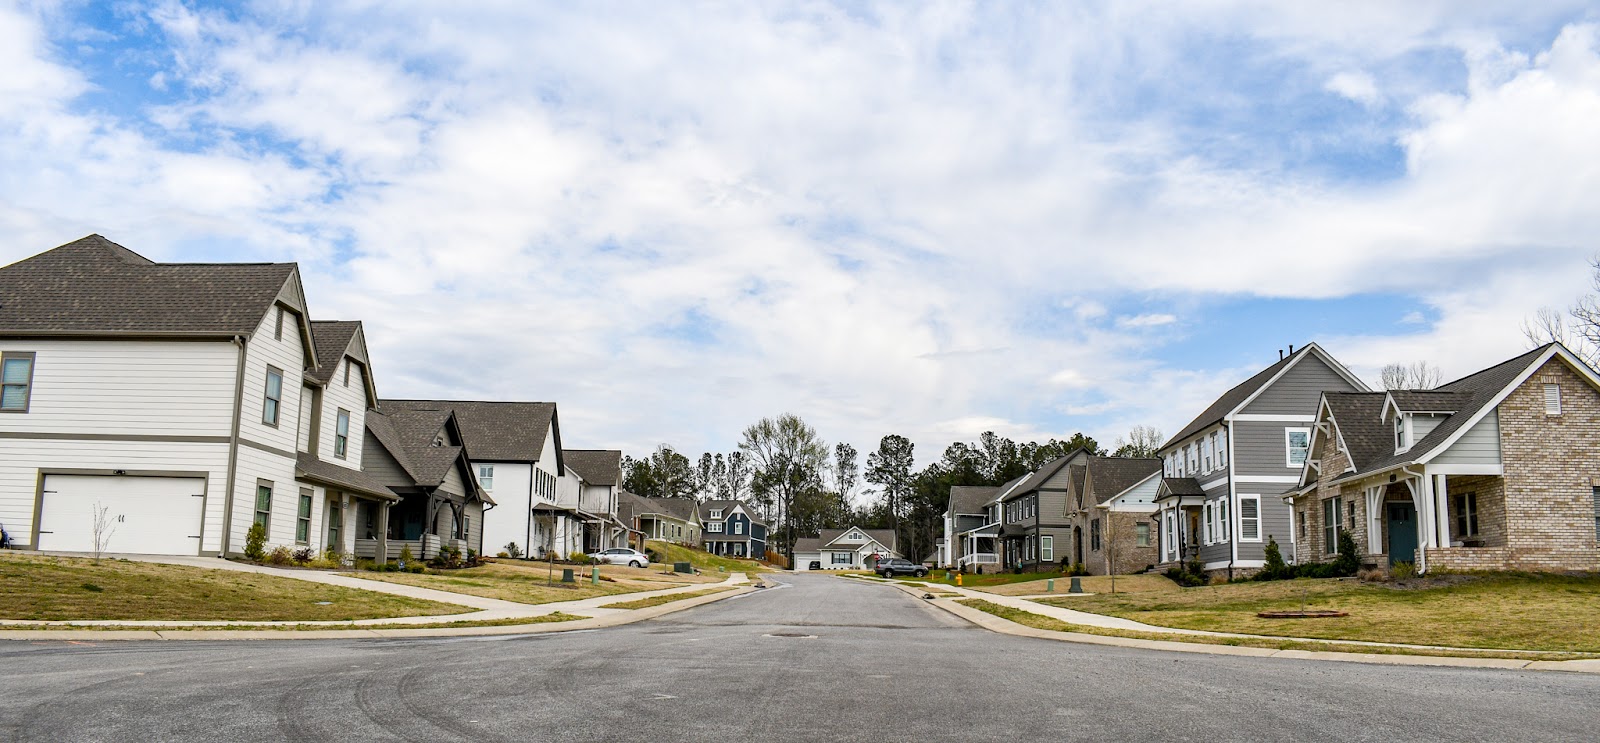 Simms Landing Neighborhood, Pelham, Alabama - Dianna Howell